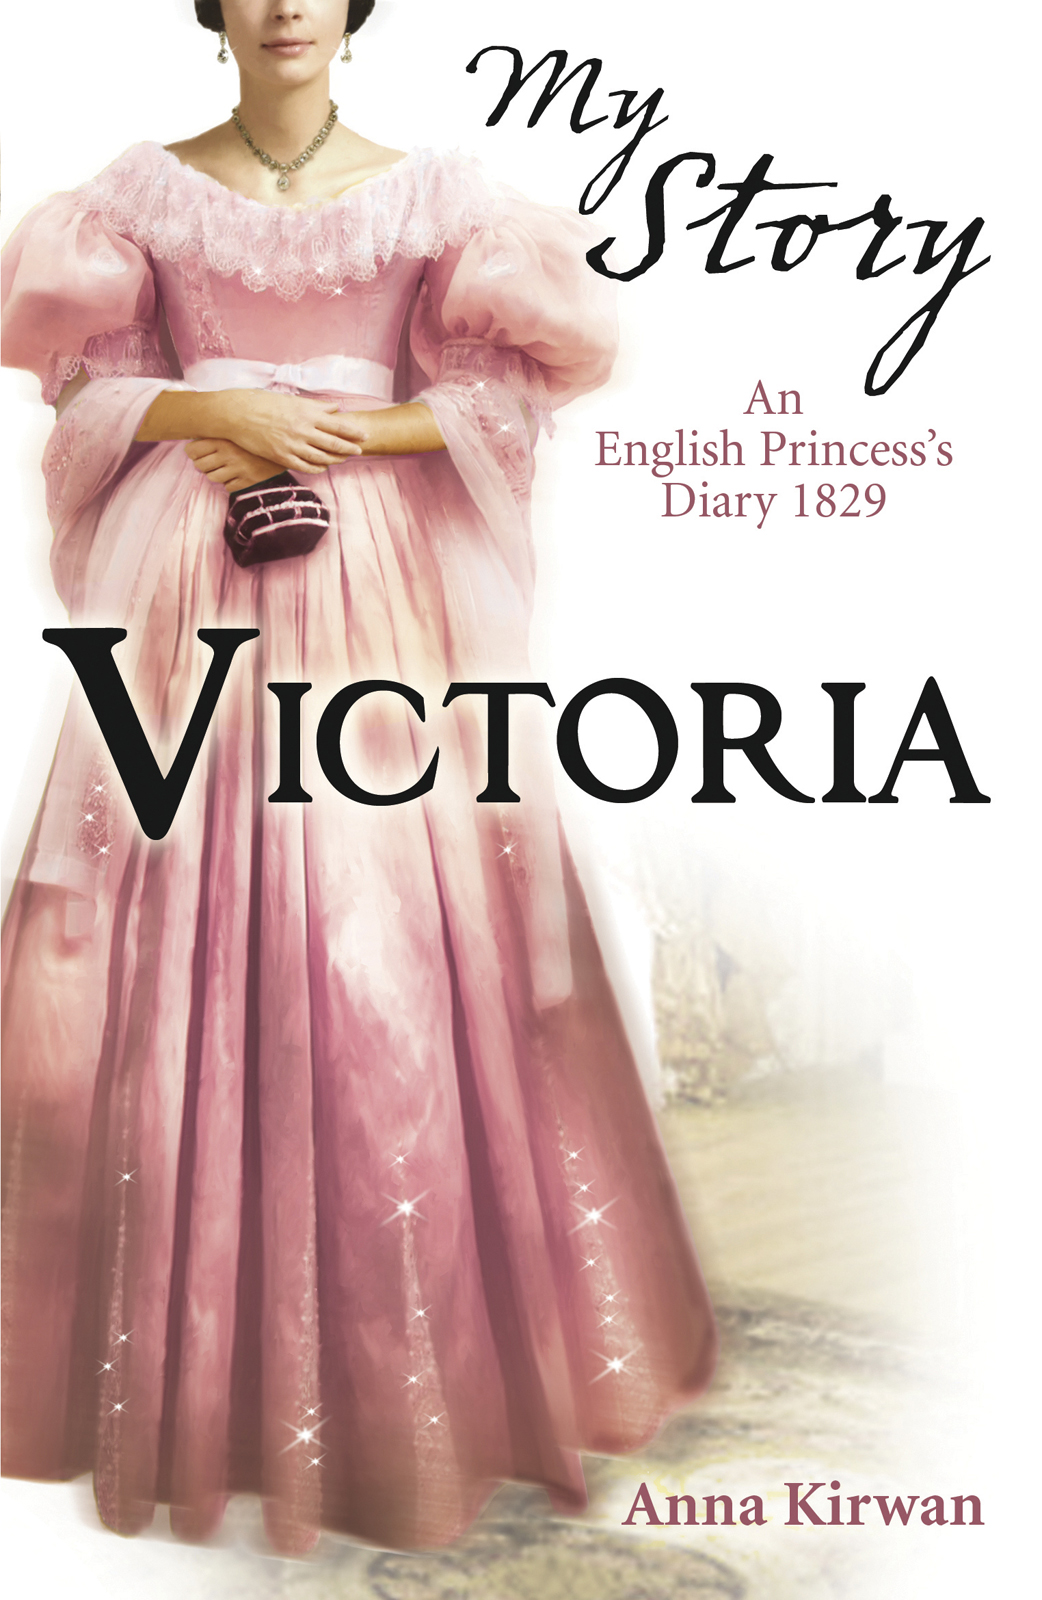 Victoria (2014) by Anna Kirwan